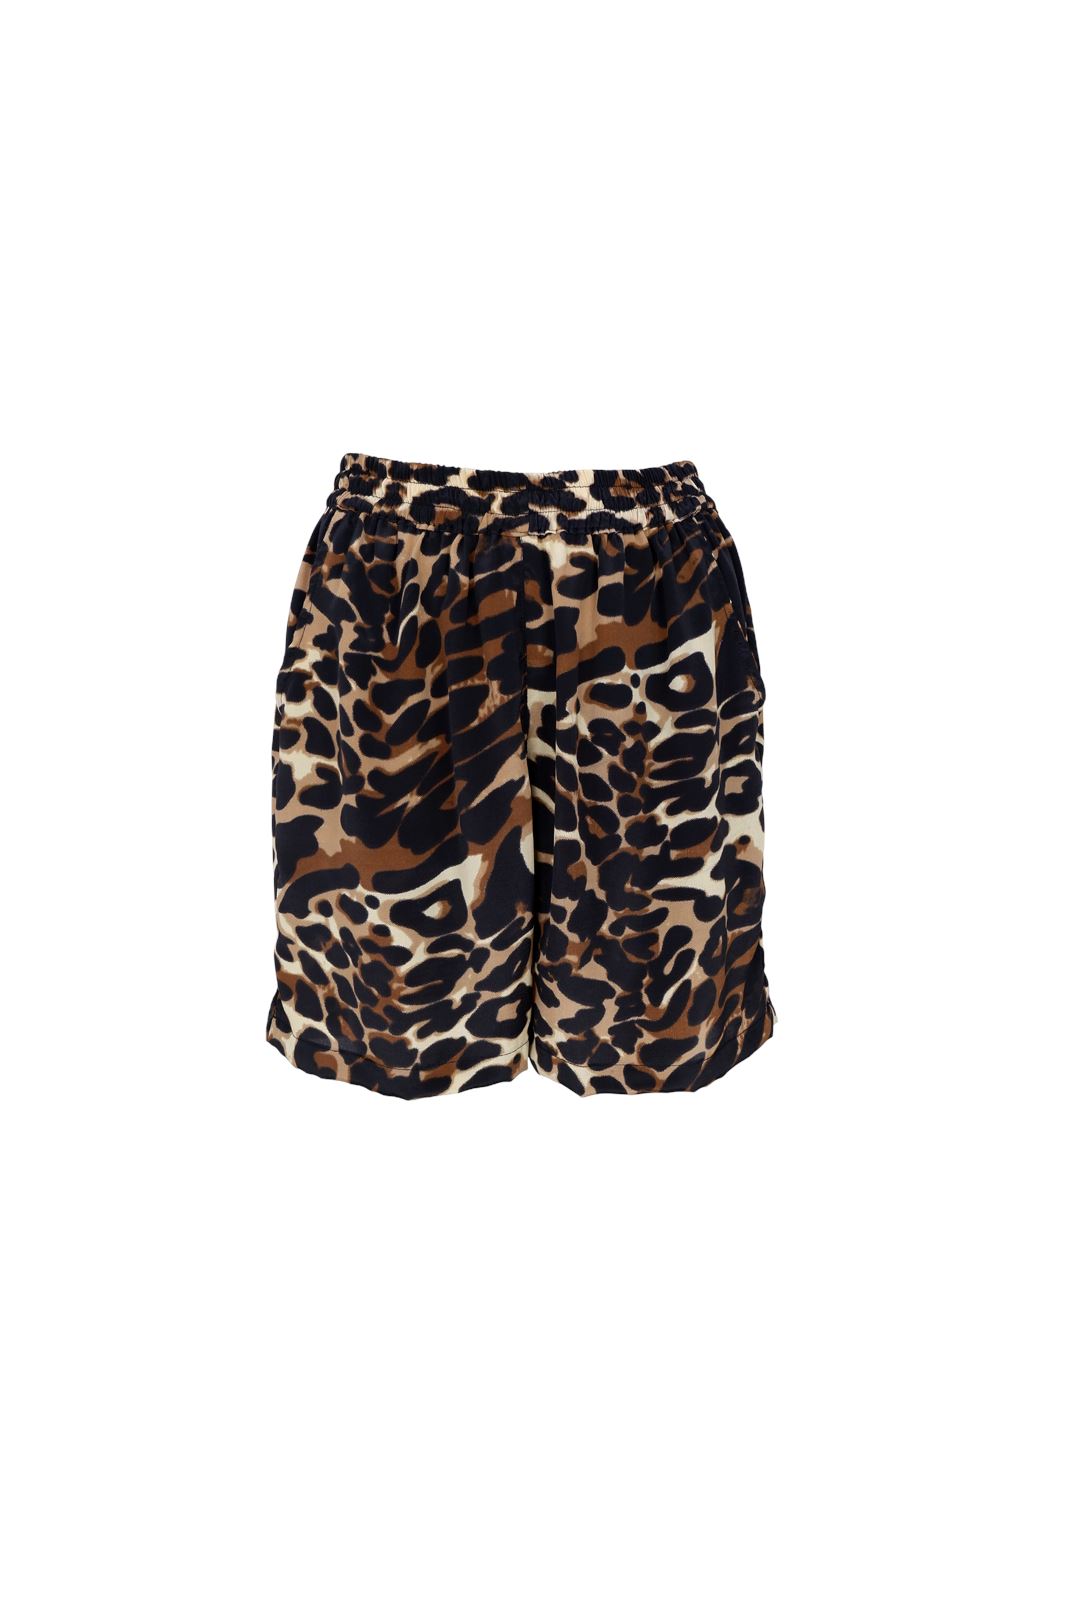 Black Colour - Bcluna Loose Shorts - Leopard